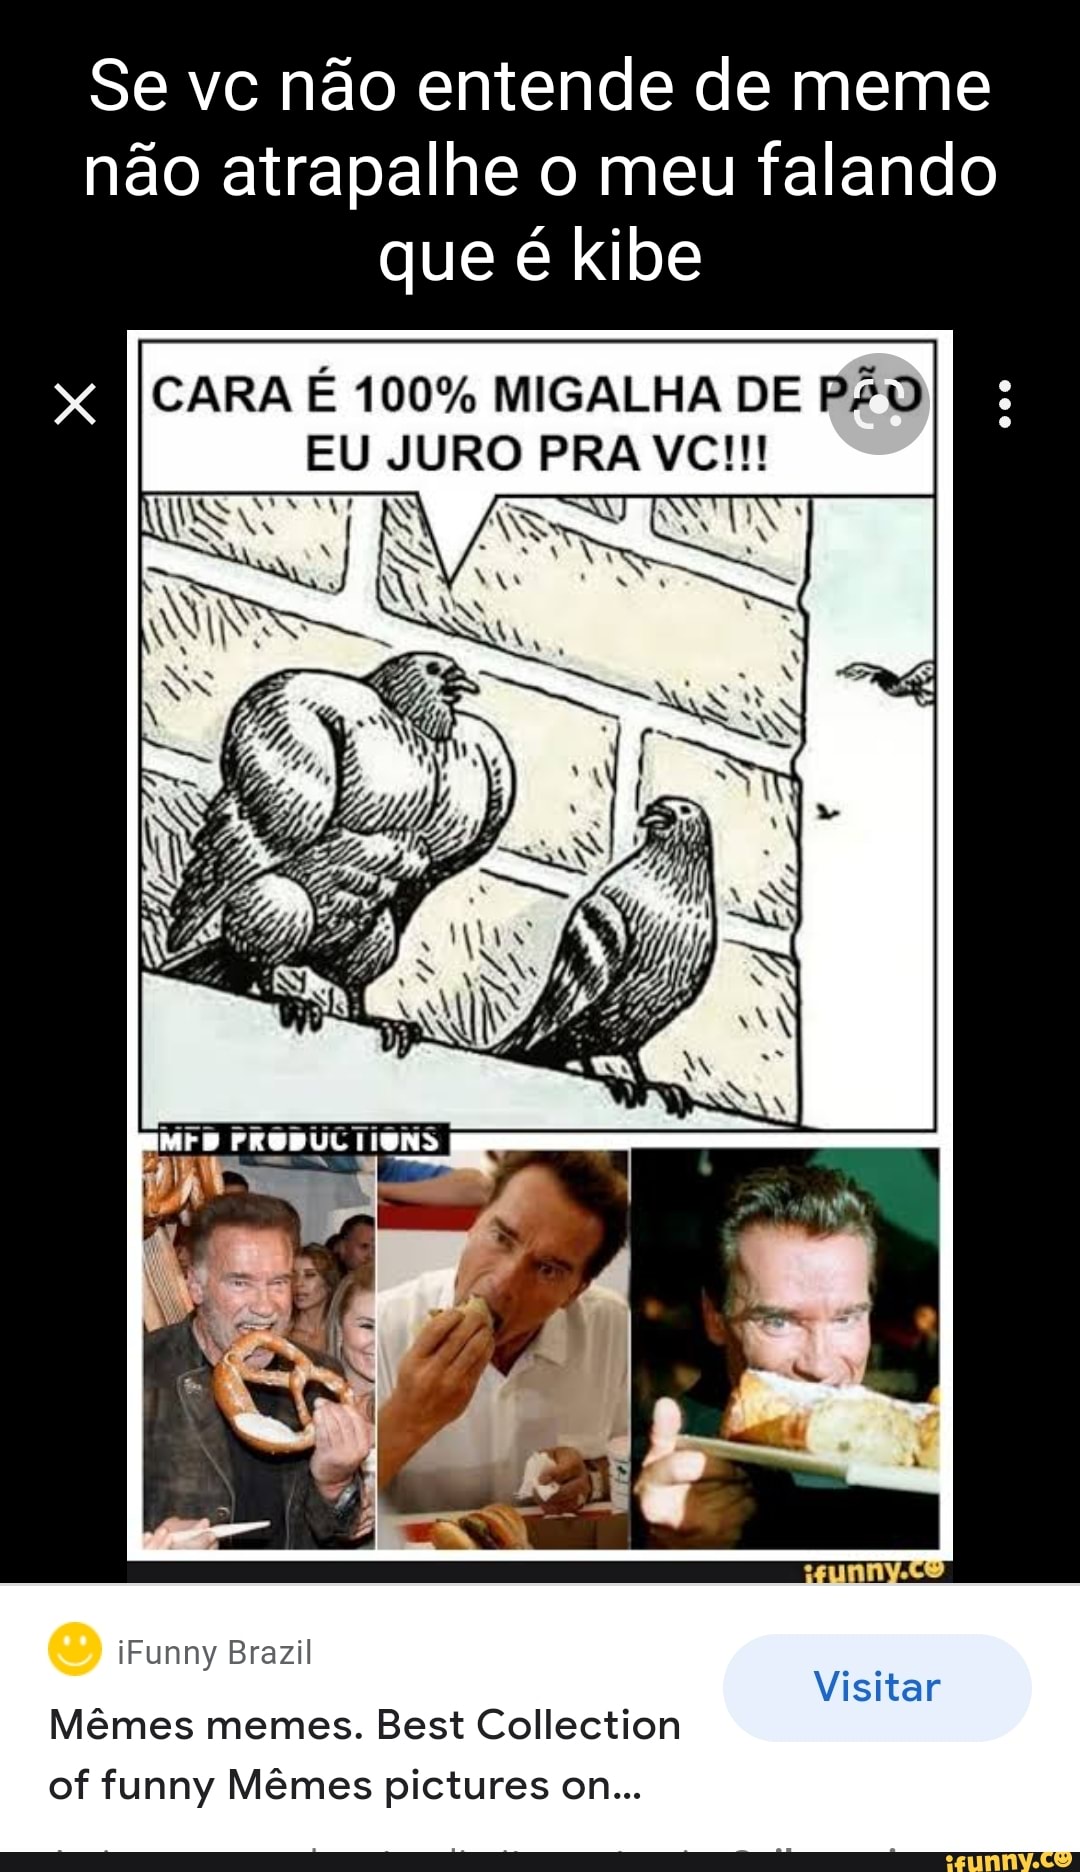 Memes de imagem 2LRmYPZVA por cp_enjoyer: 1 comentário - iFunny Brazil